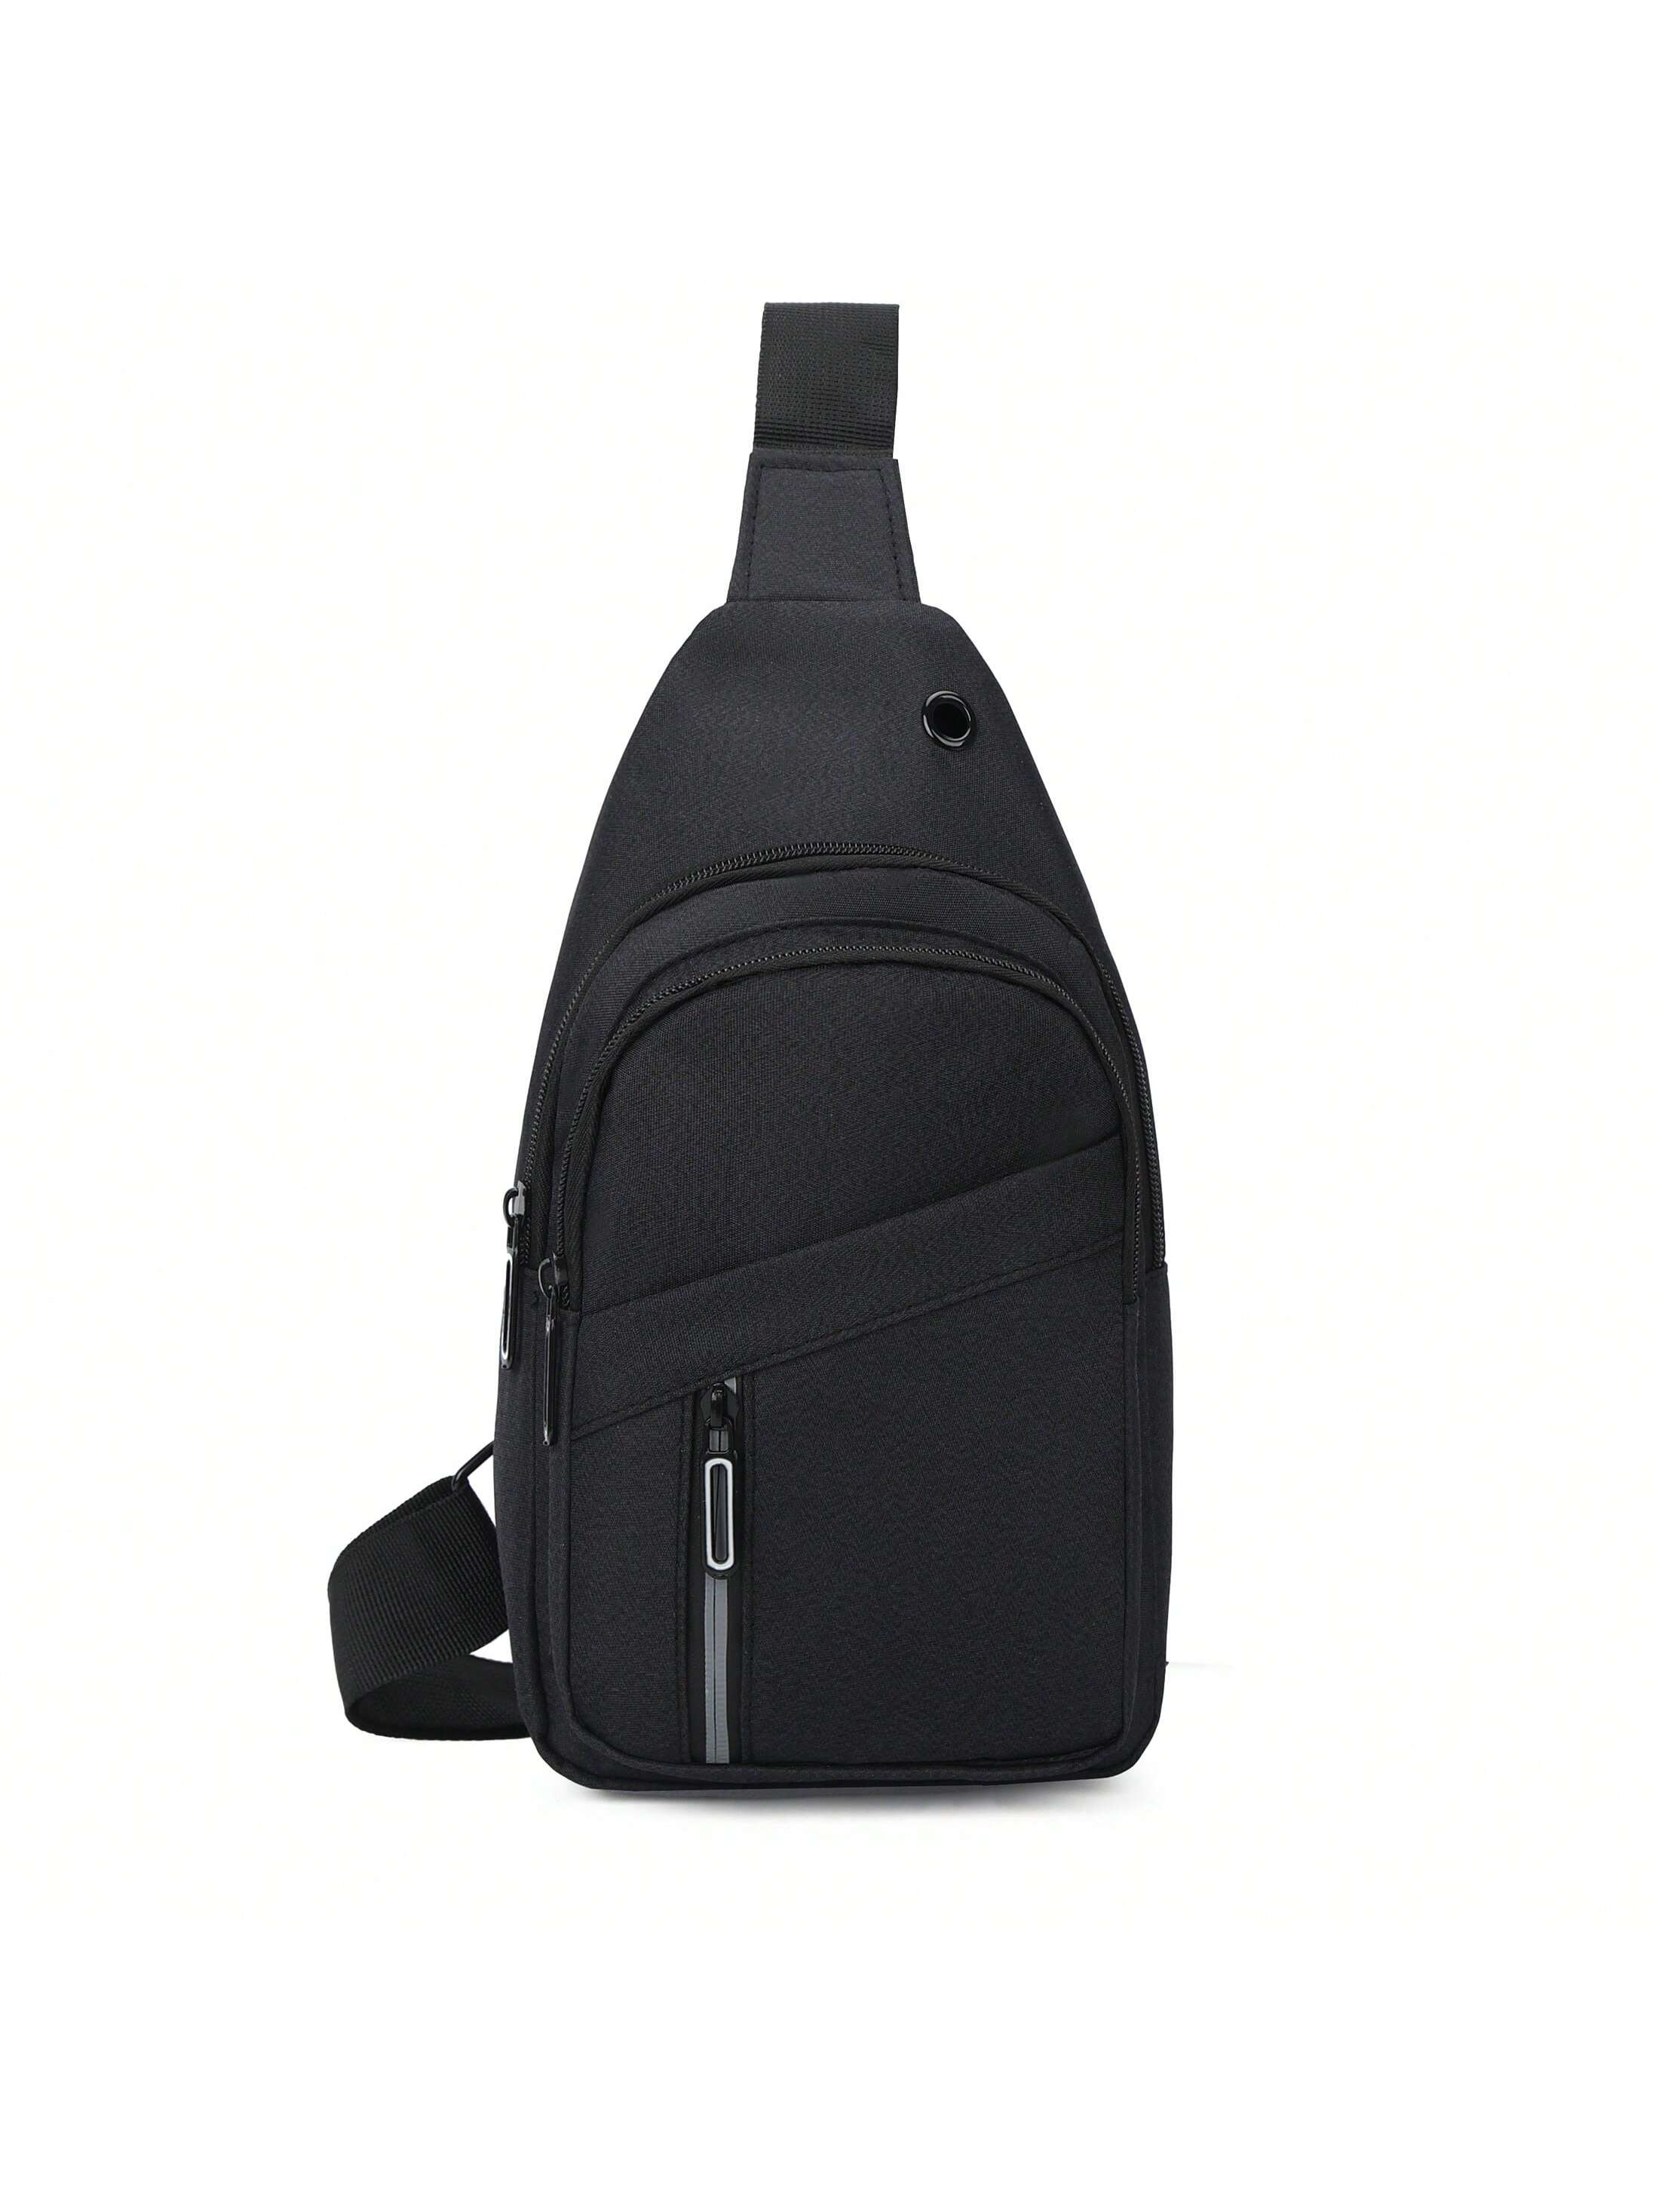 1 шт. однотонная нагрудная сумка на молнии, черный поясная сумка для мужчин и женщин забавная модная нагрудная сумочка уличная спортивная повседневная дорожная мужская сумка через плечо